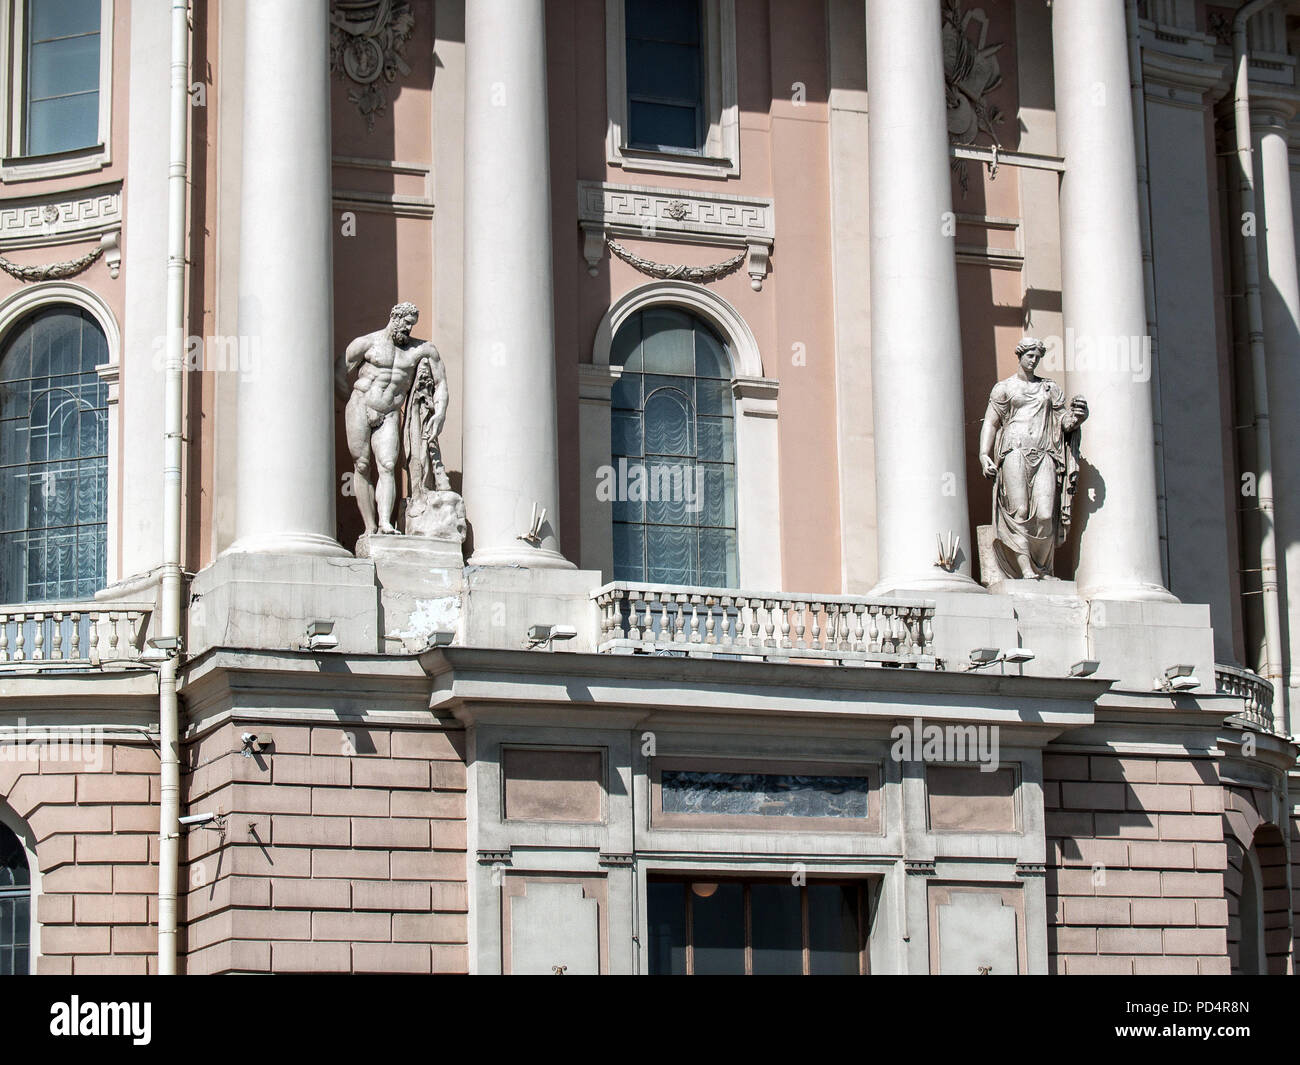 Ein Teil des Gebäudes der Akademie der Künste in St. Petersburg auf der Universität damm Fassade mit Säulen und antiken Skulpturen große Fenster auf Stockfoto